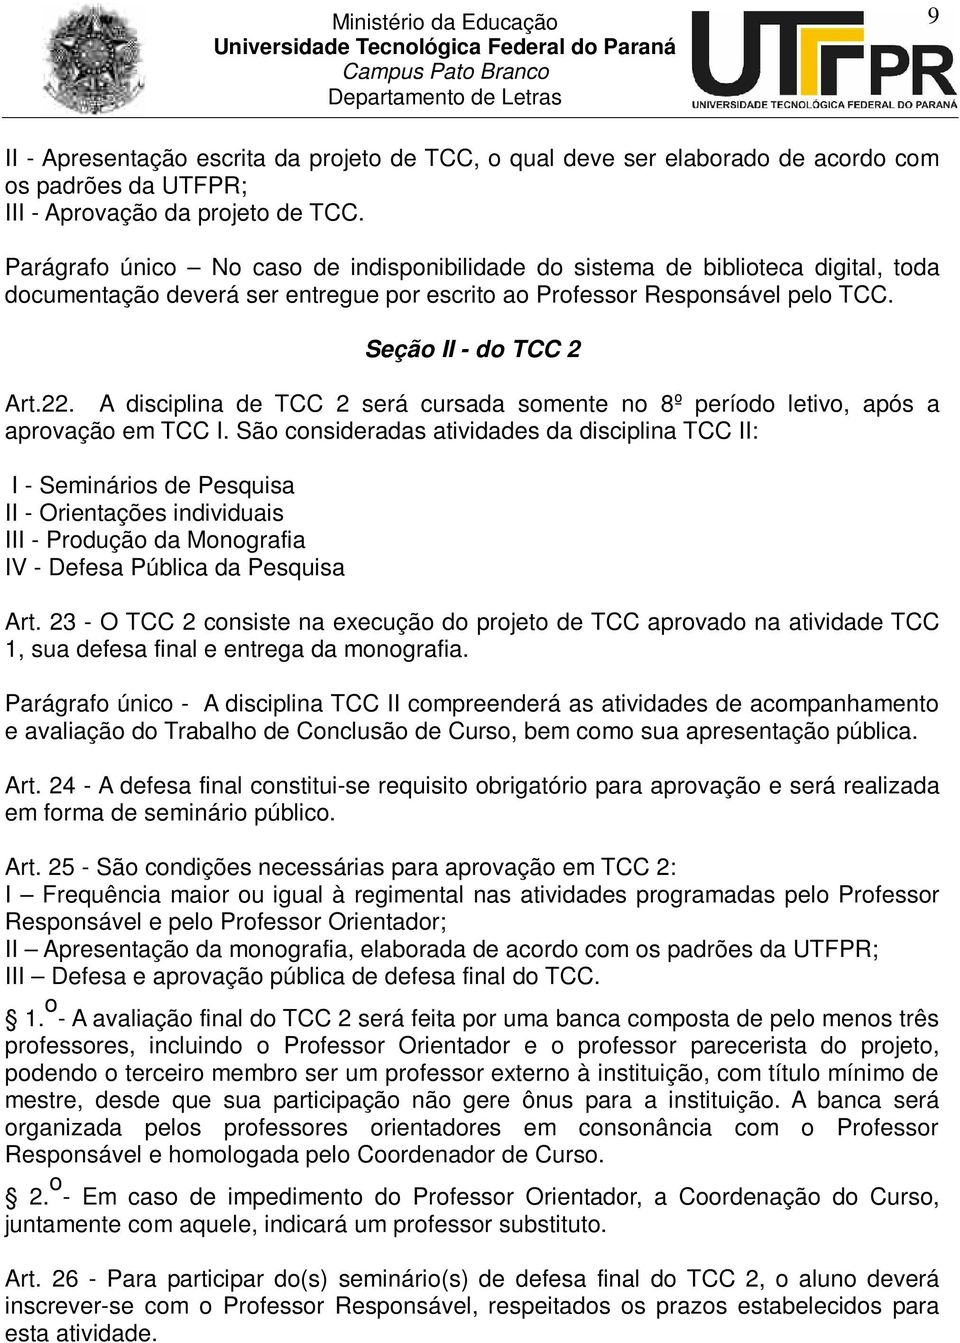 A disciplina de TCC 2 será cursada somente no 8º período letivo, após a aprovação em TCC I.